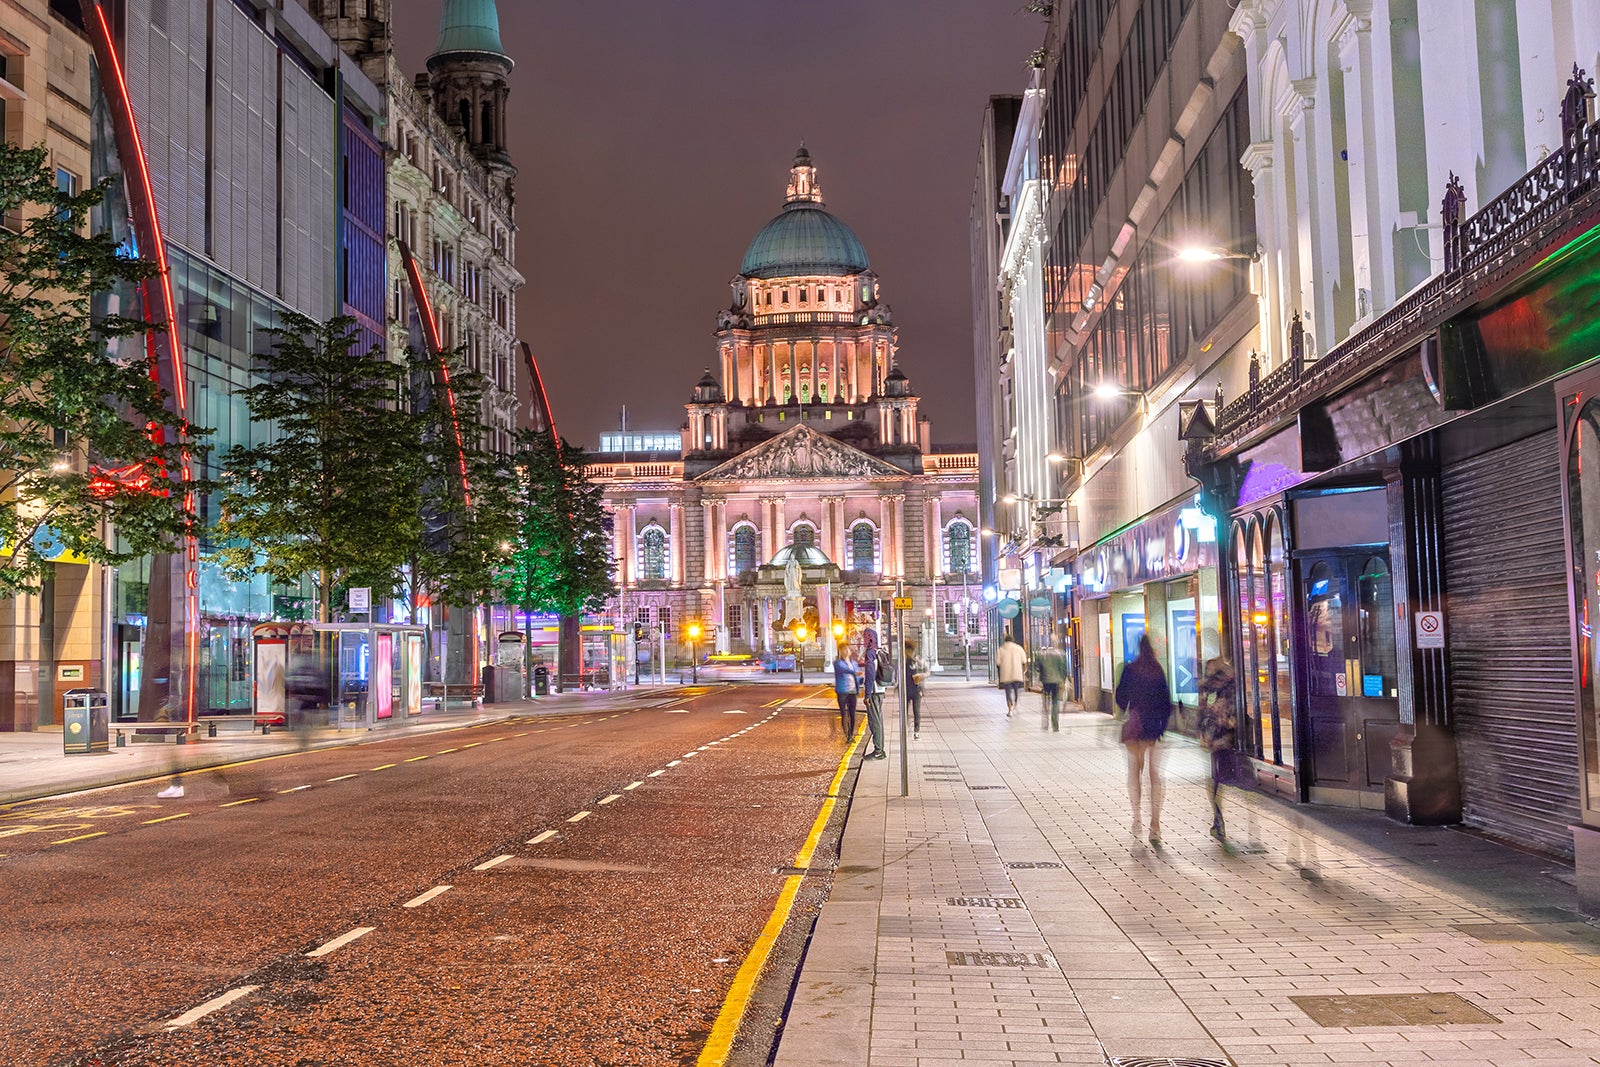 most hateful cities - Belfast'